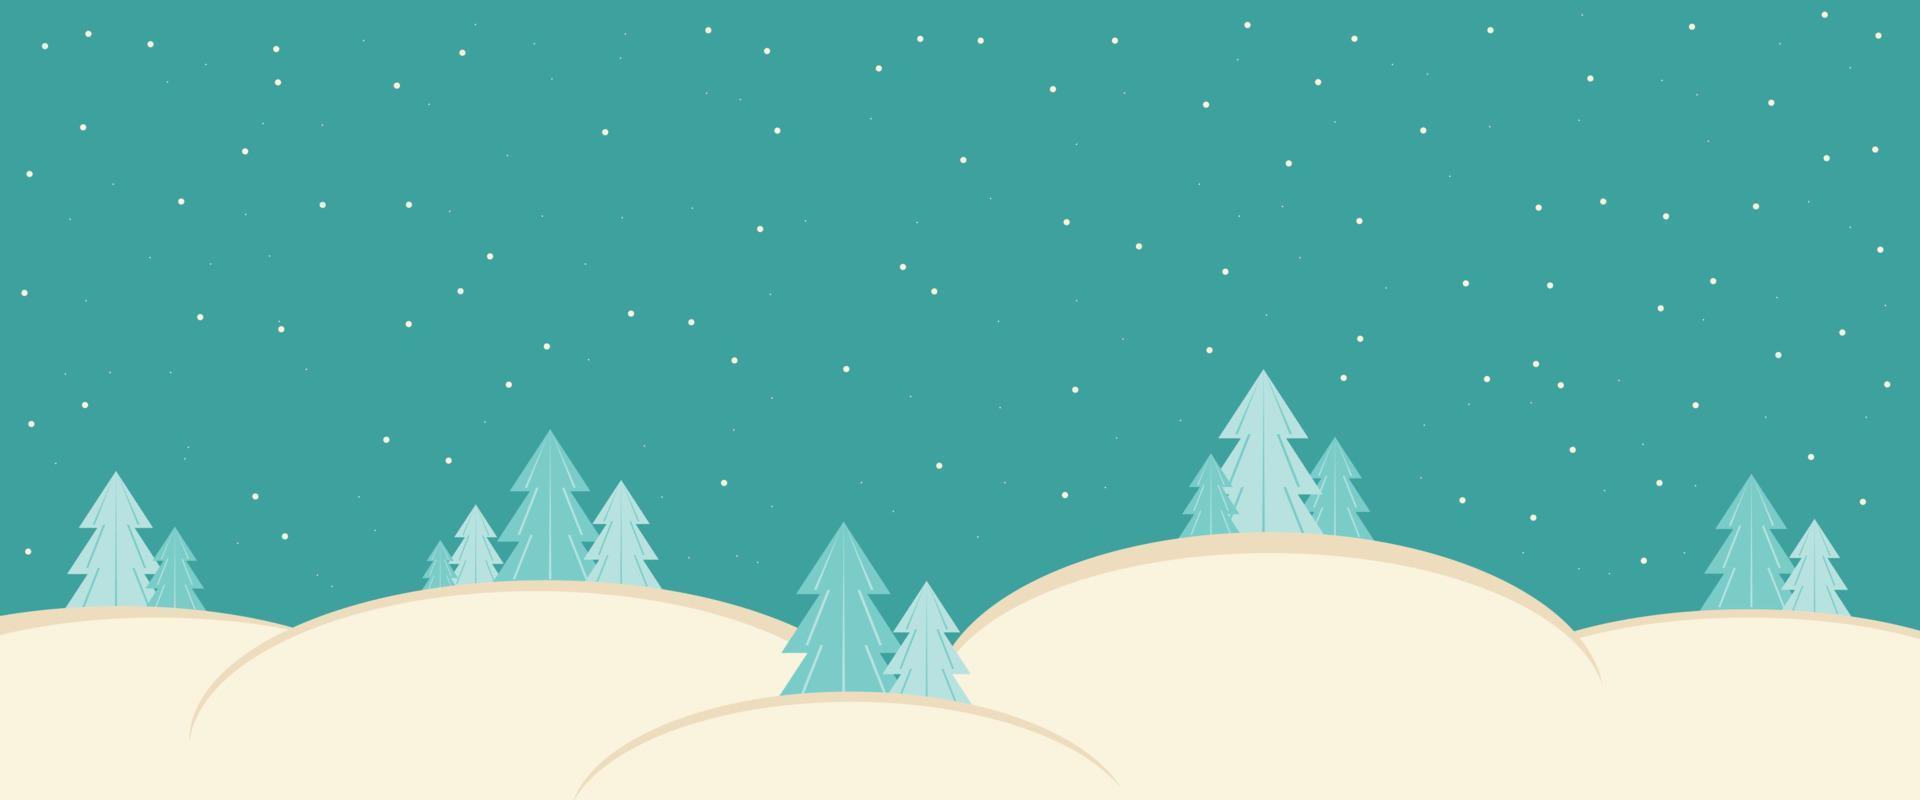 vinter bakgrund med snödrivor och julgranar på en blå himmel med snö. vektor